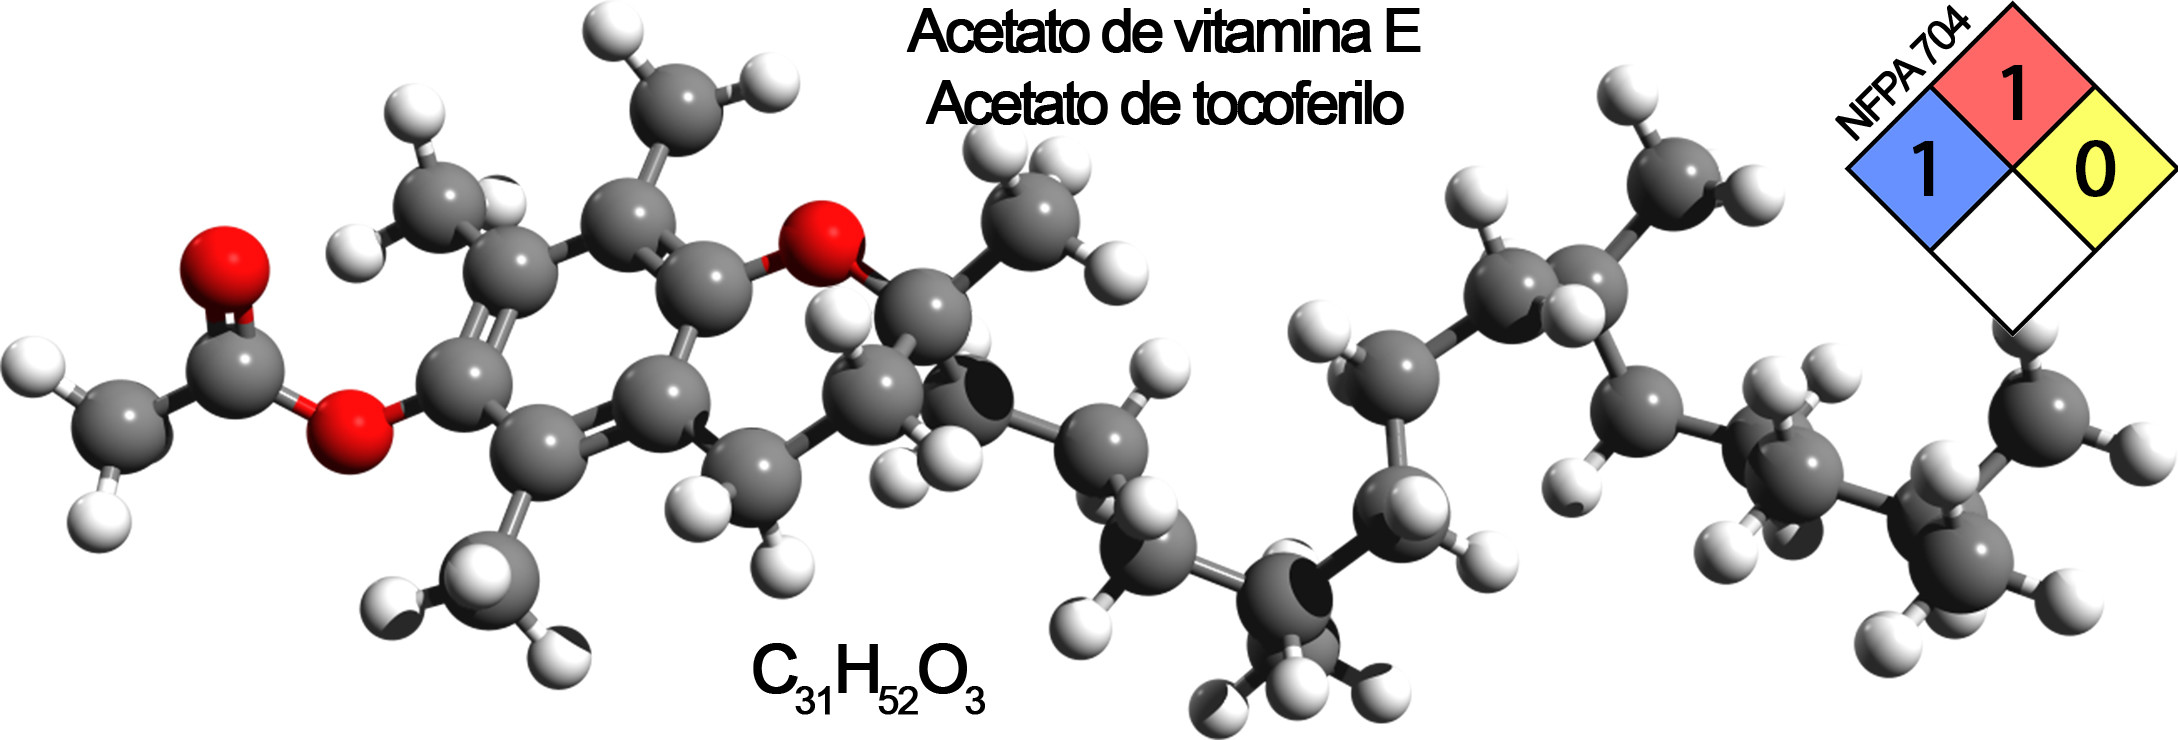 acetato de vitamina E composicion marcado vapear